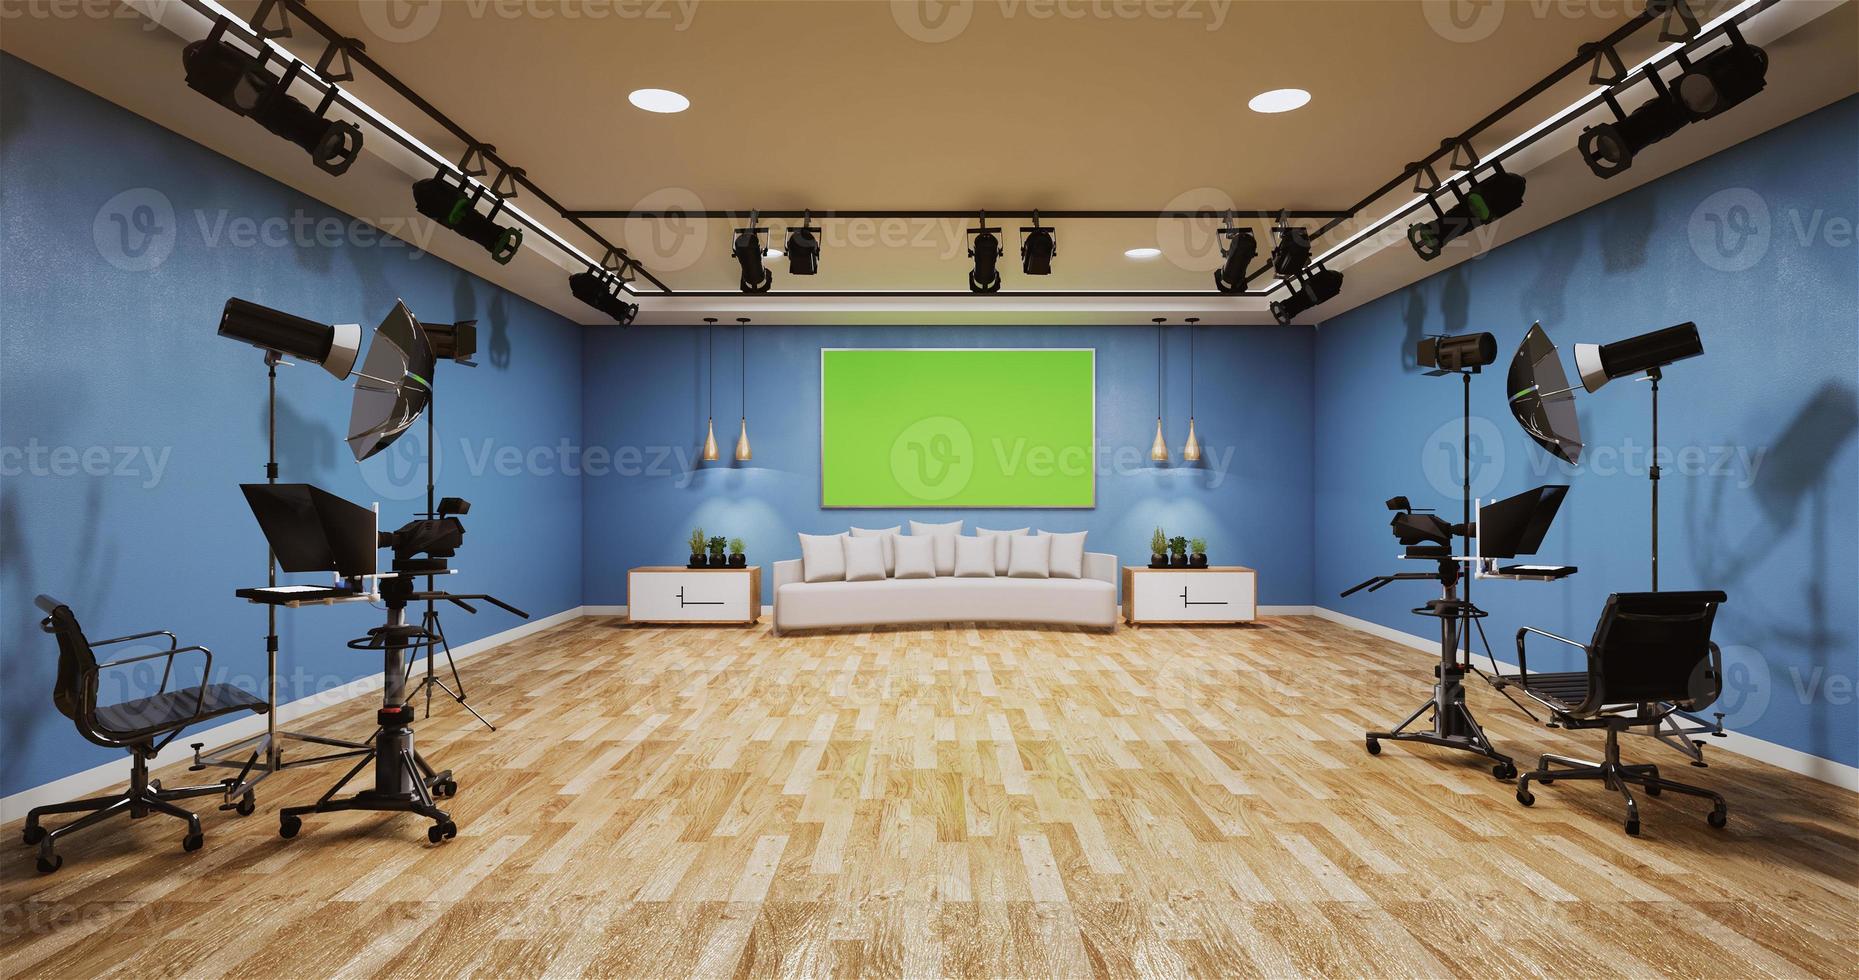 nyheter studio blå rum design bakgrund för tv-program.3D-rendering foto